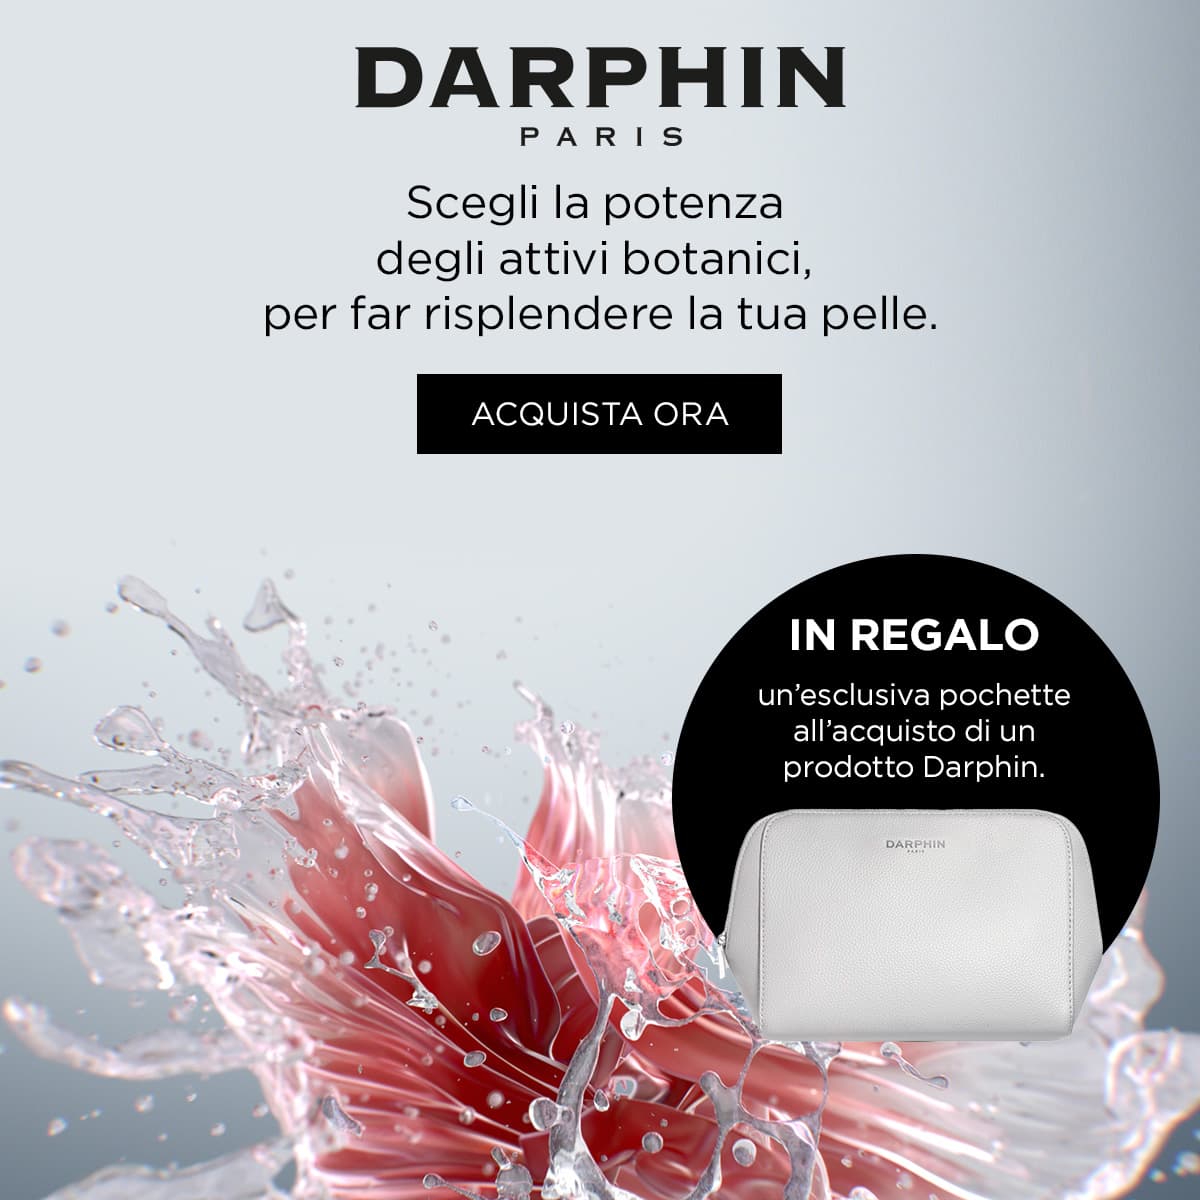 darphin promo pochette omaggio banner